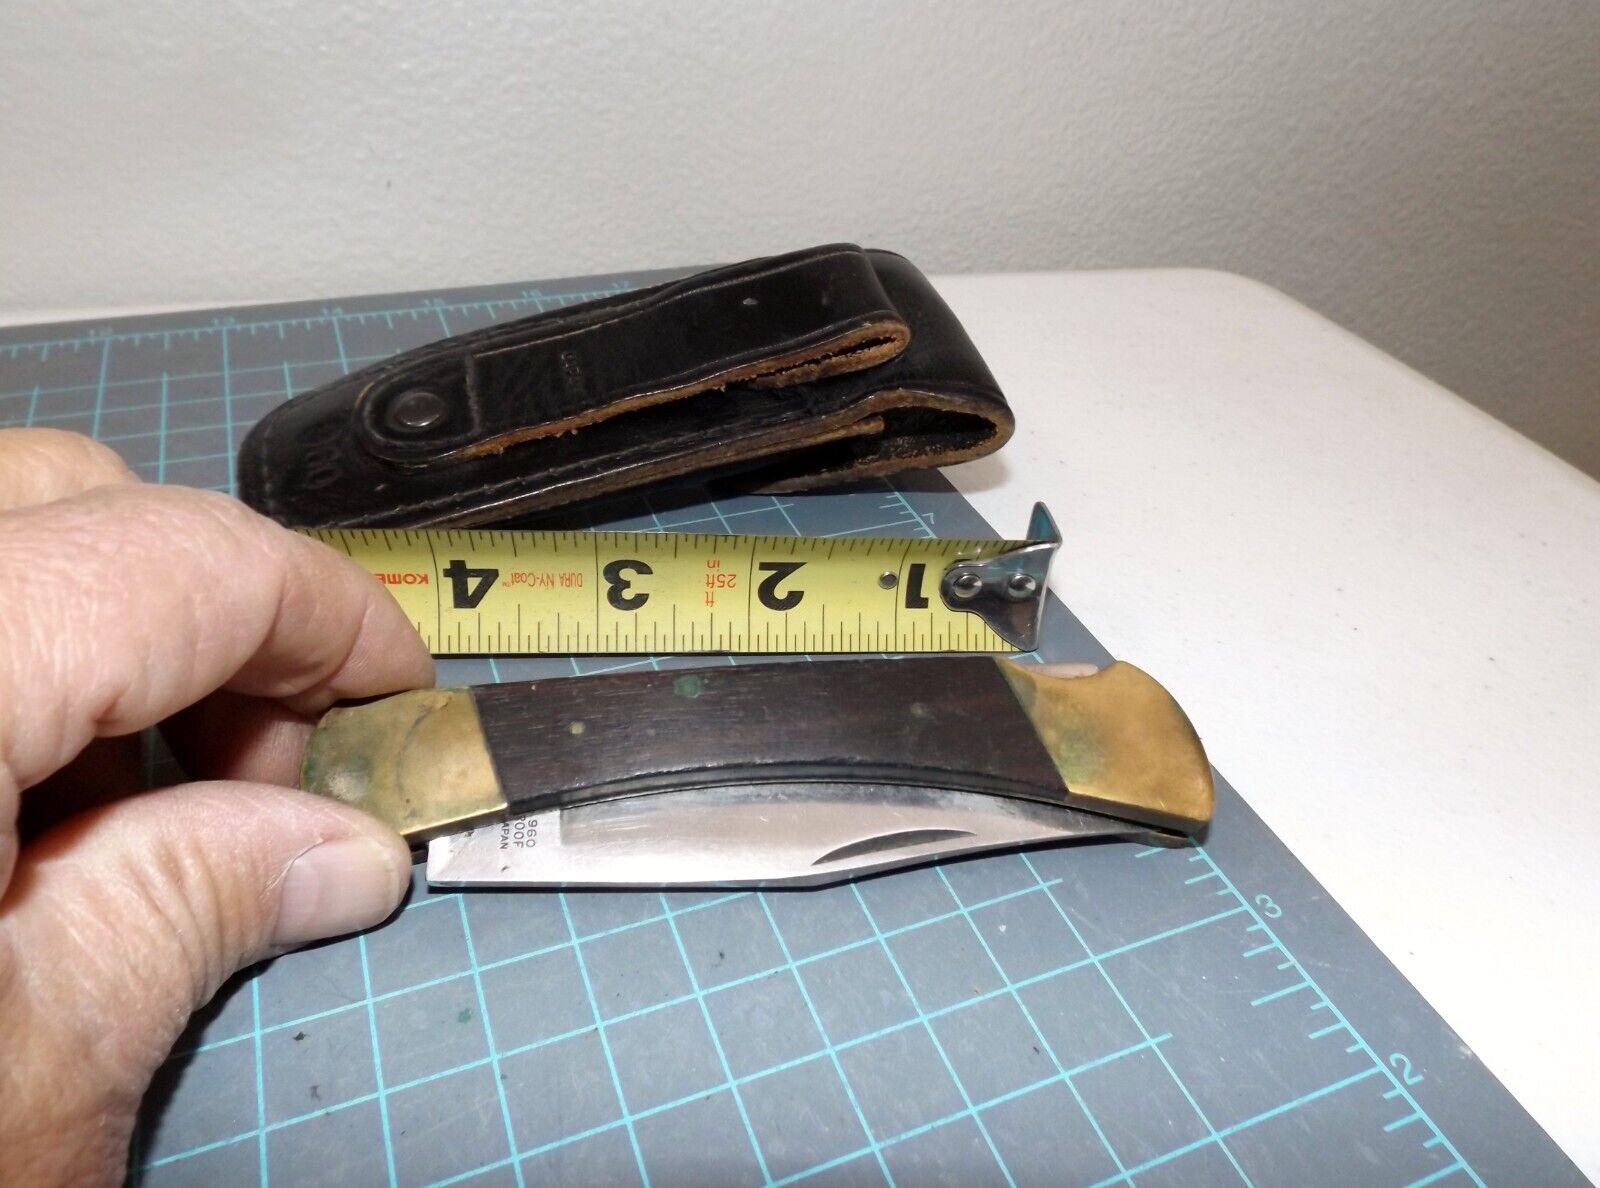 G96 brand folding knife model 960